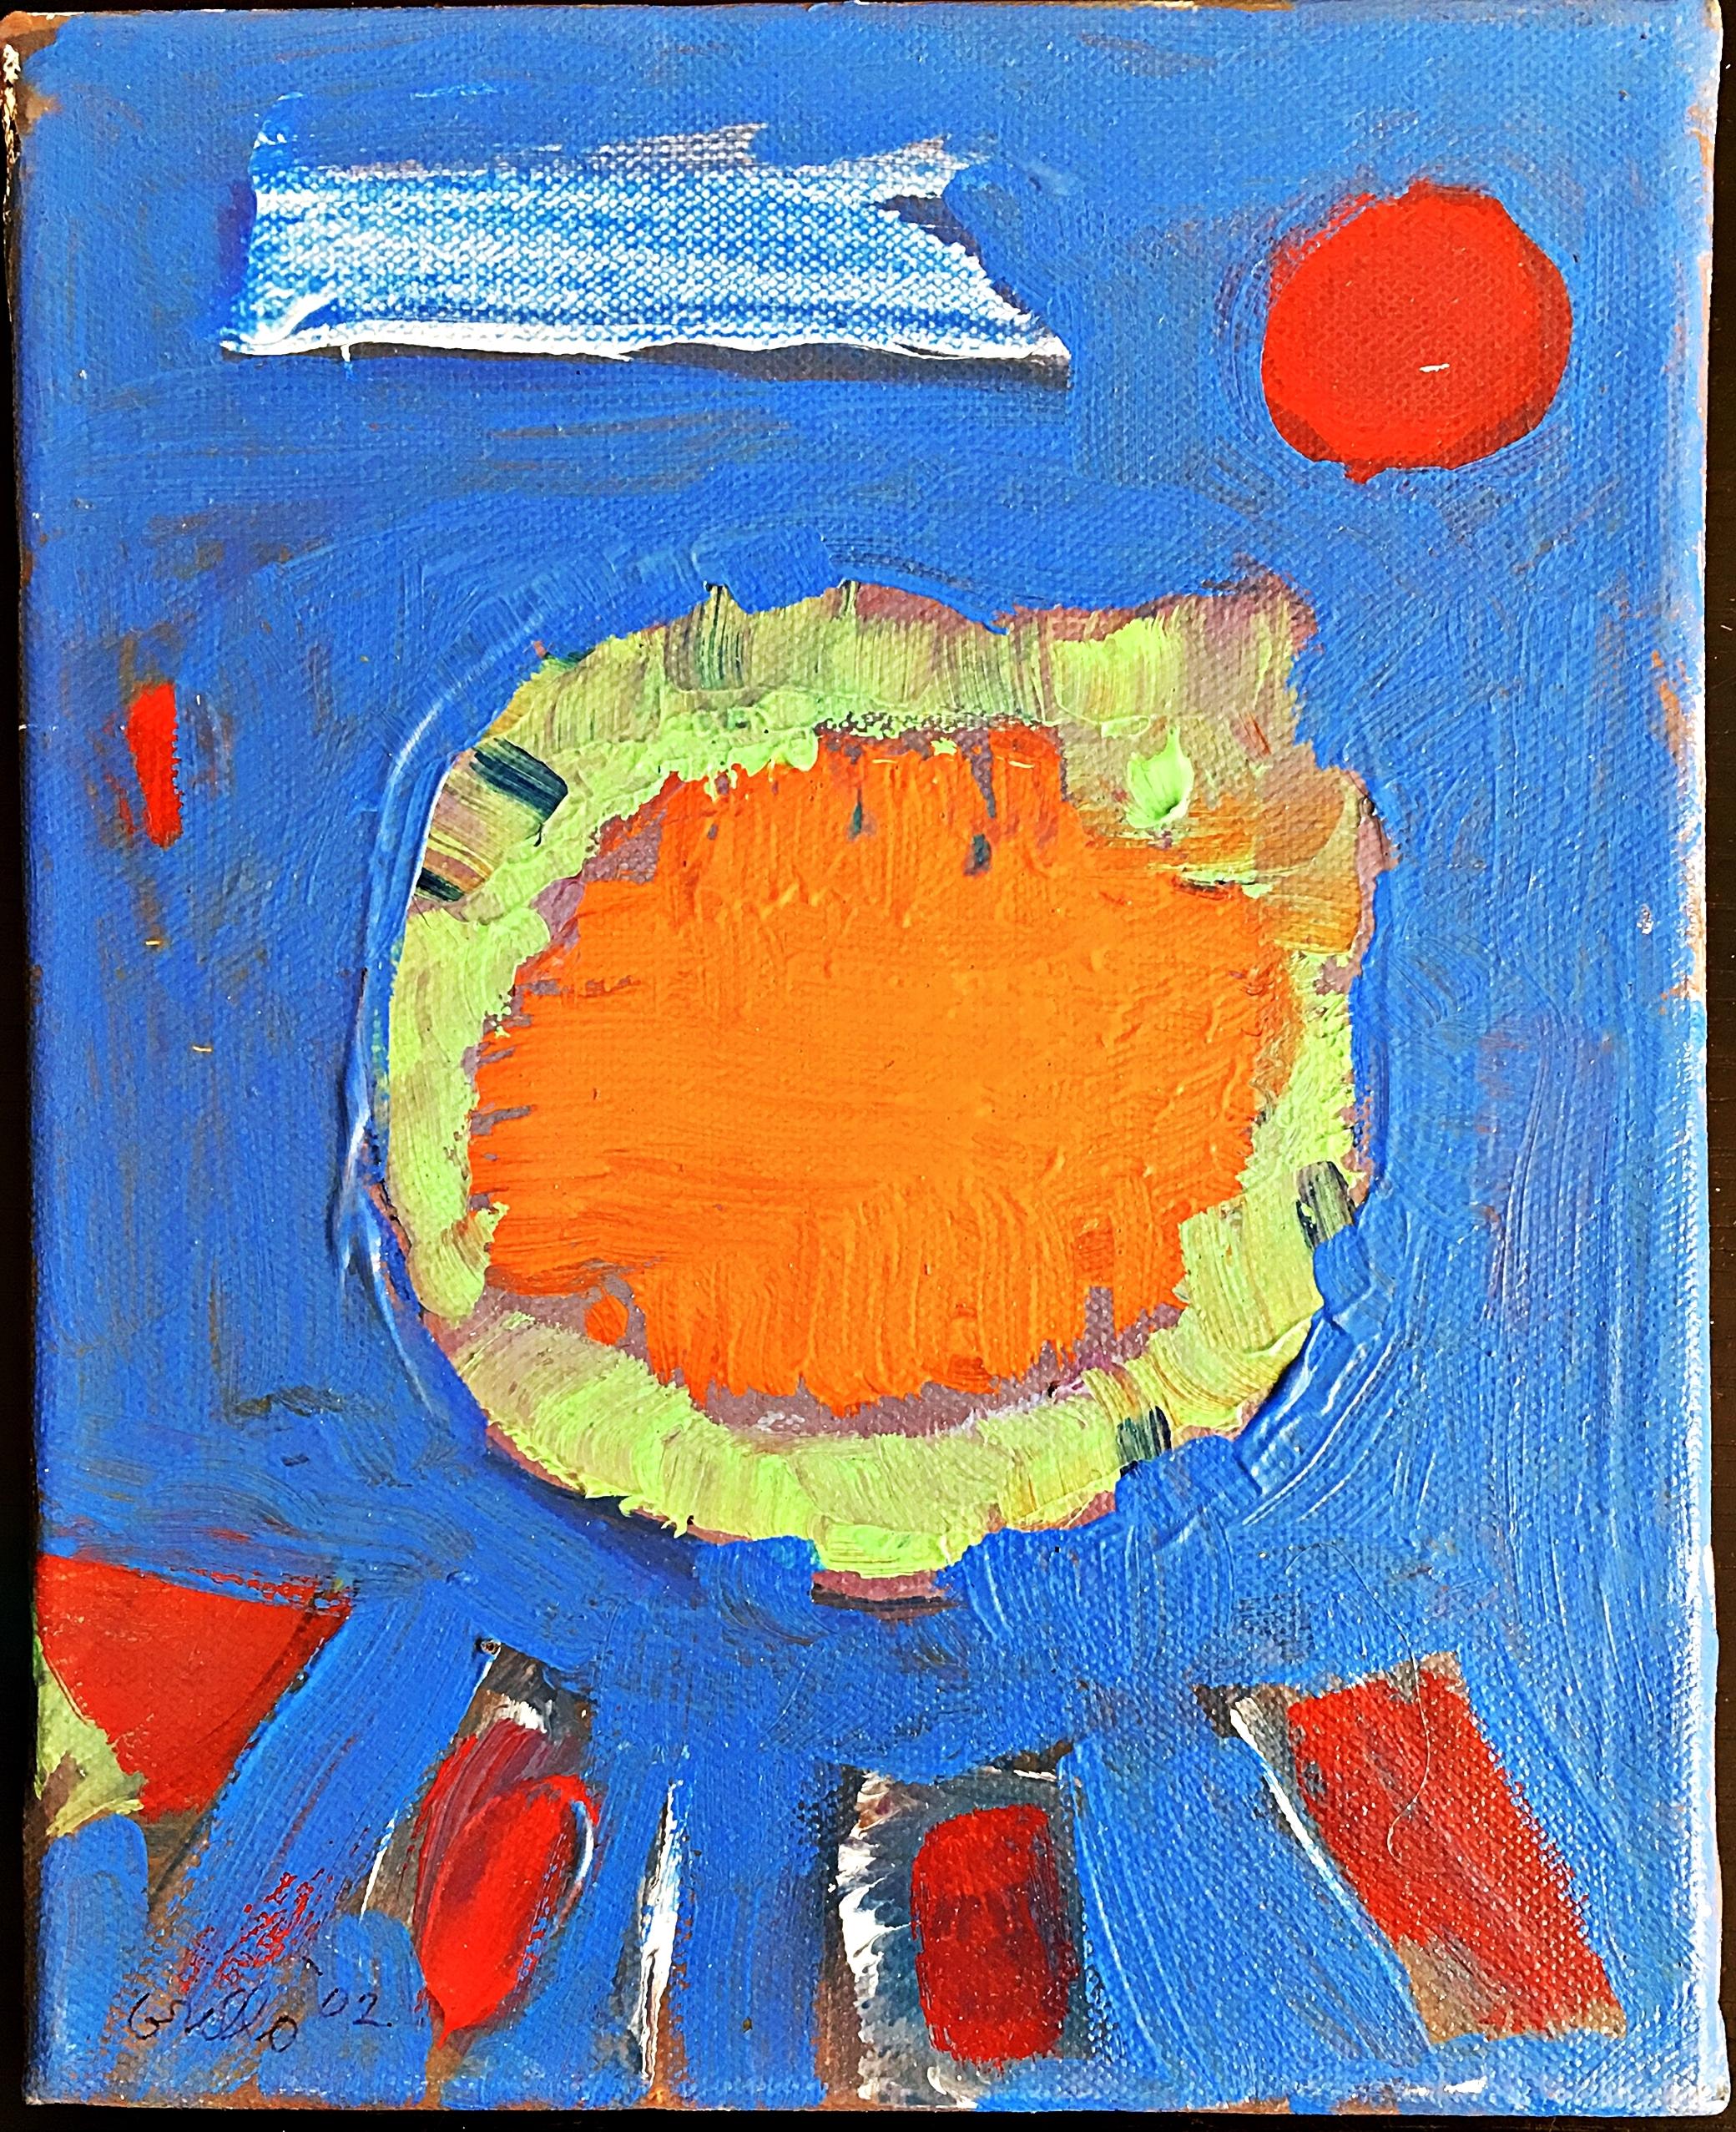 Abstract Painting John Grillo - Magnifique peinture expressionniste abstraite d'un peintre de renom, bonne provenance